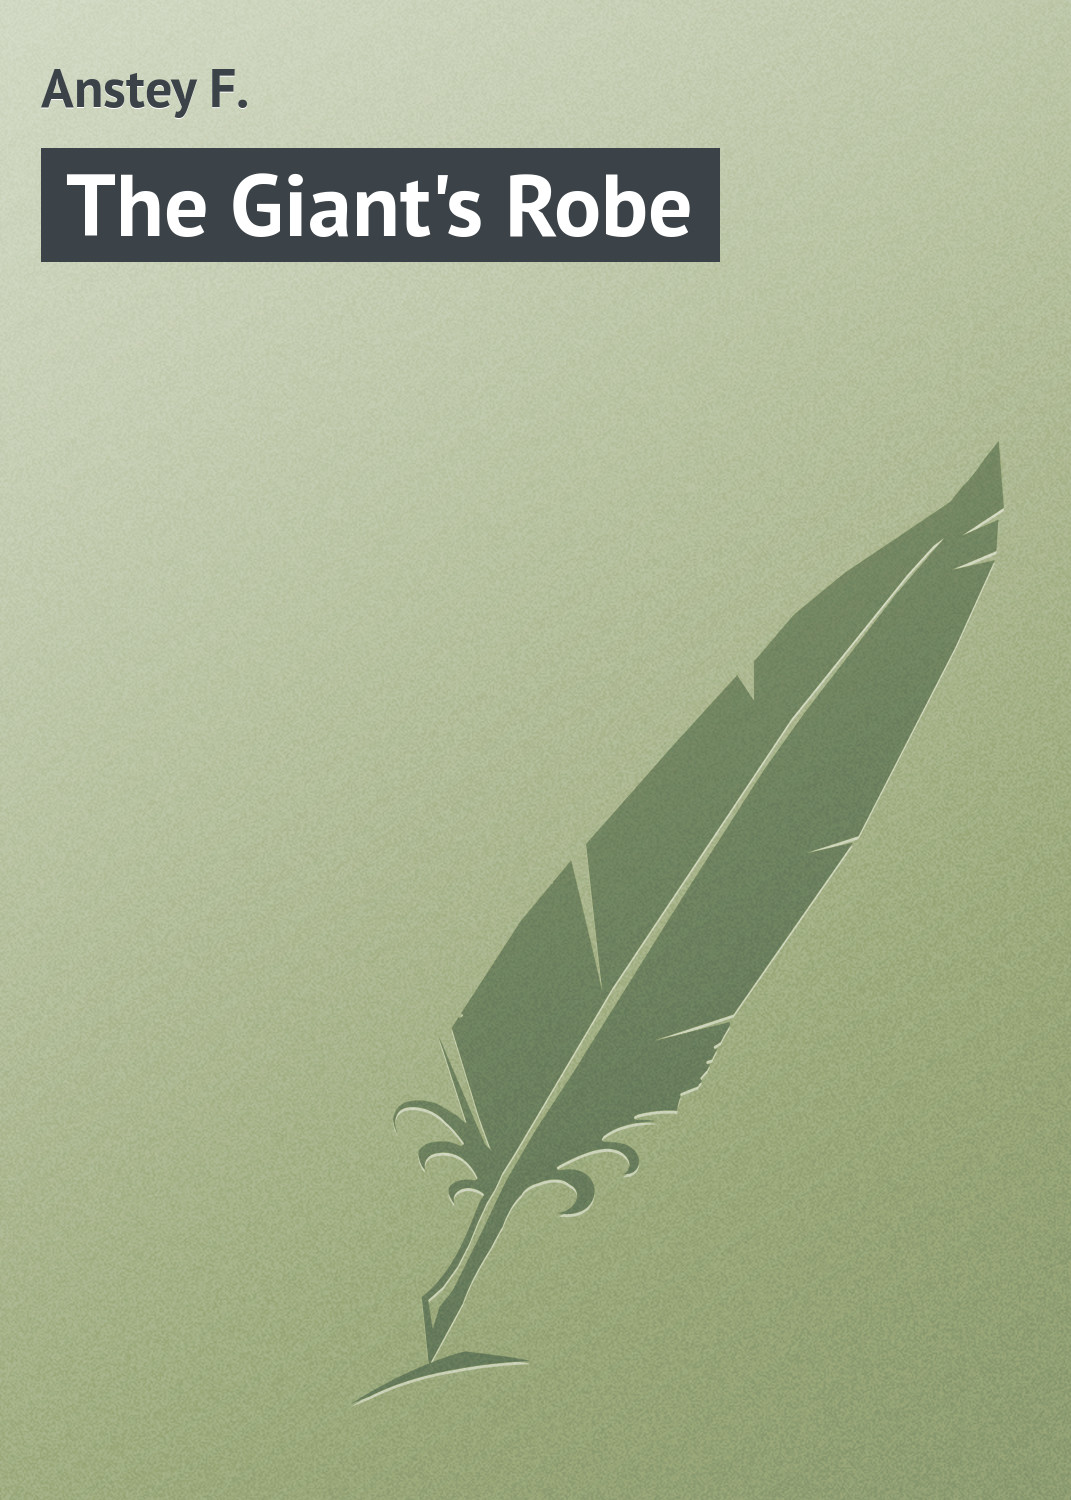 Книга The Giant's Robe из серии , созданная F. Anstey, может относится к жанру Зарубежная классика, Иностранные языки. Стоимость электронной книги The Giant's Robe с идентификатором 23155763 составляет 5.99 руб.